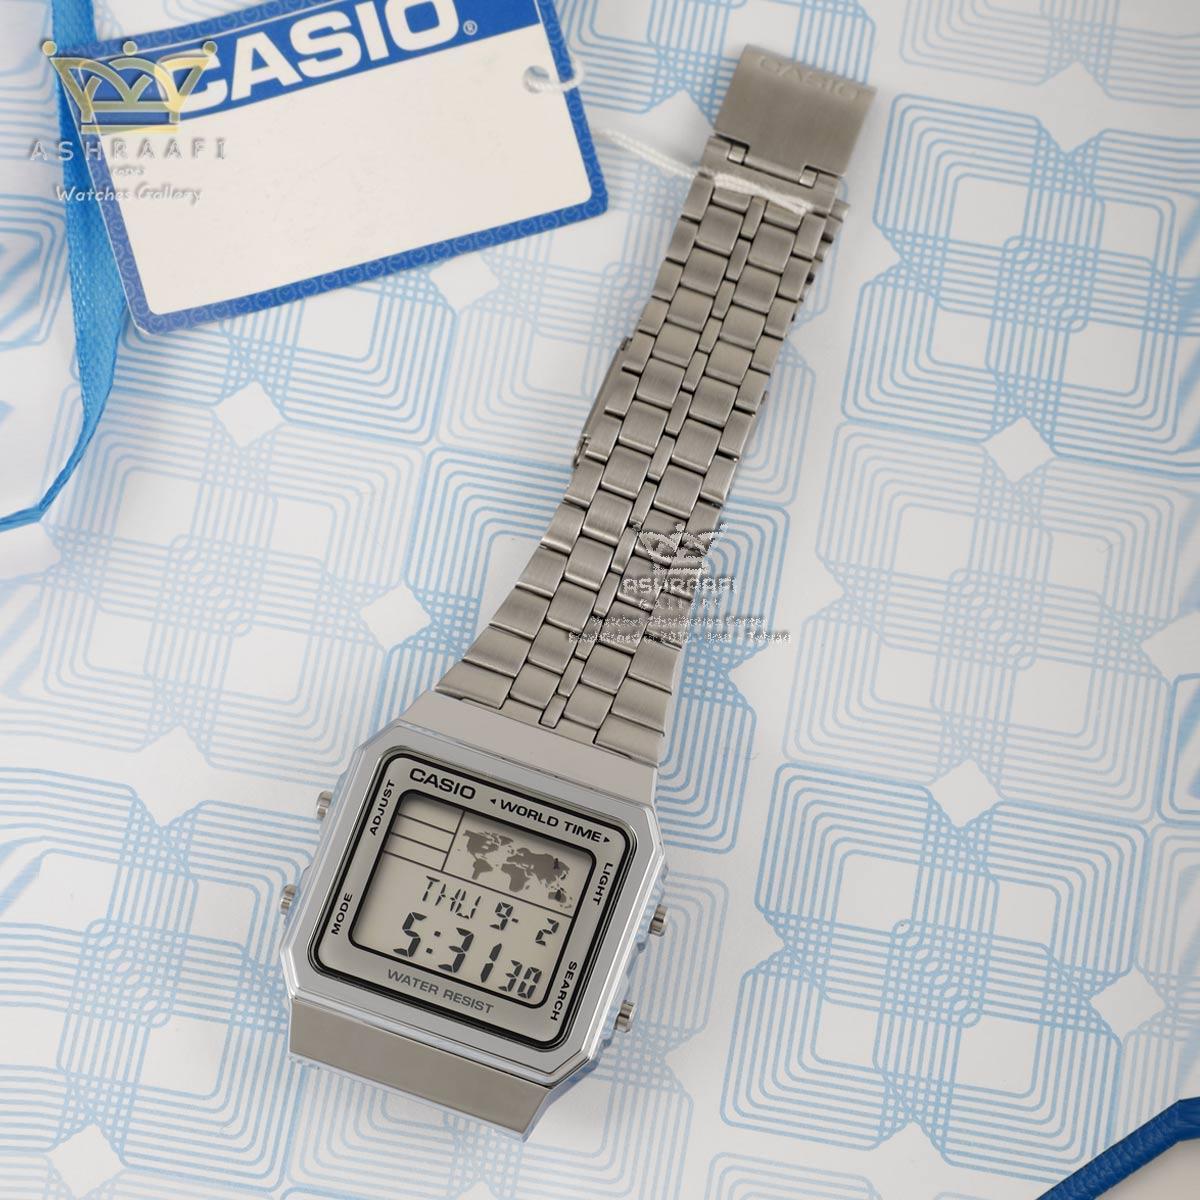 خرید و قیمت ساعت کاسیو اورجینال دیجیتالی Casio A500WA-7